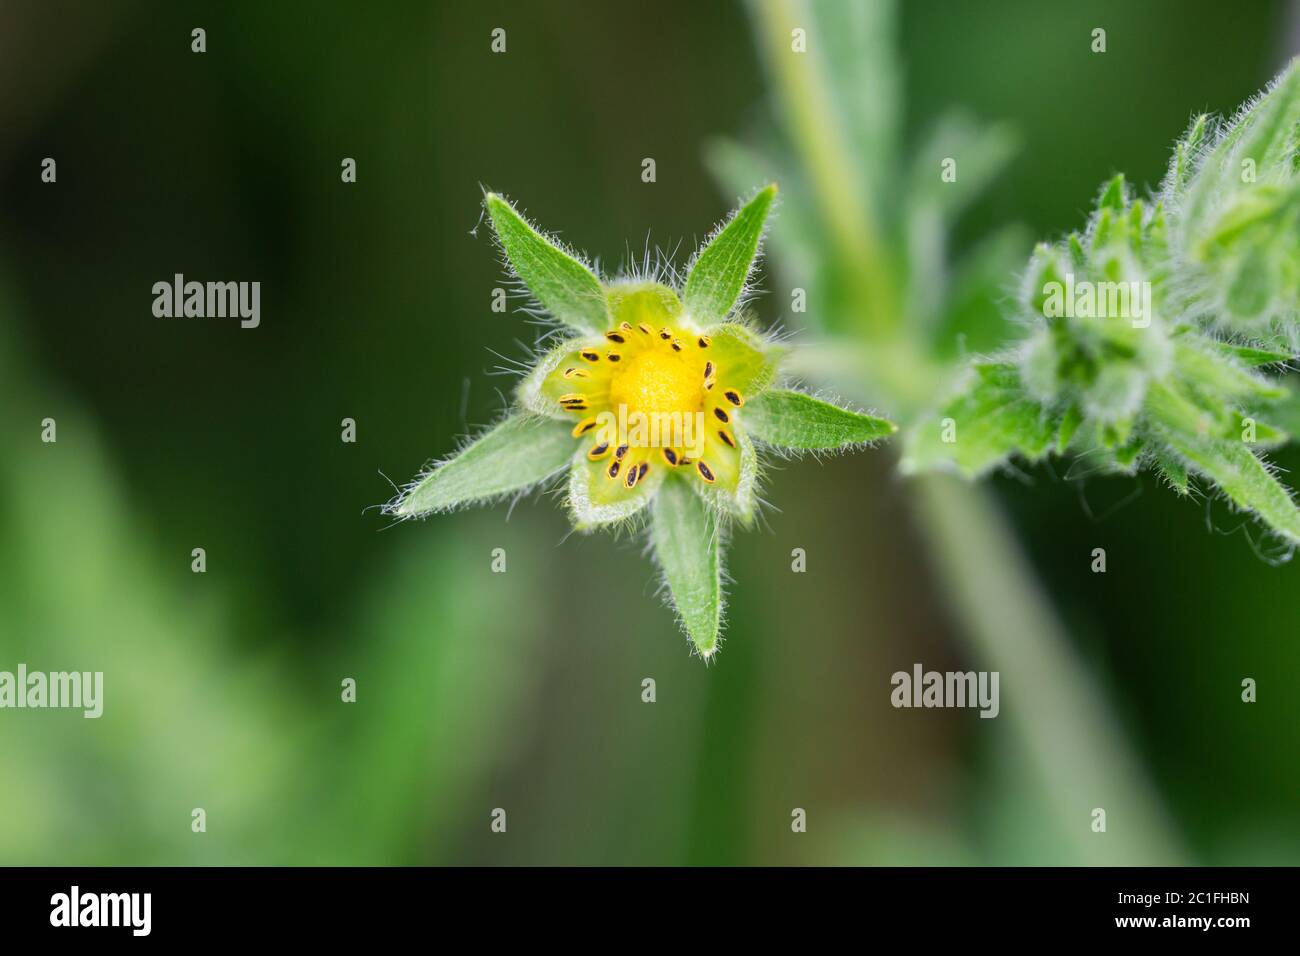 Sulphur Cinquefoil Flower in Springtime Stock Photo